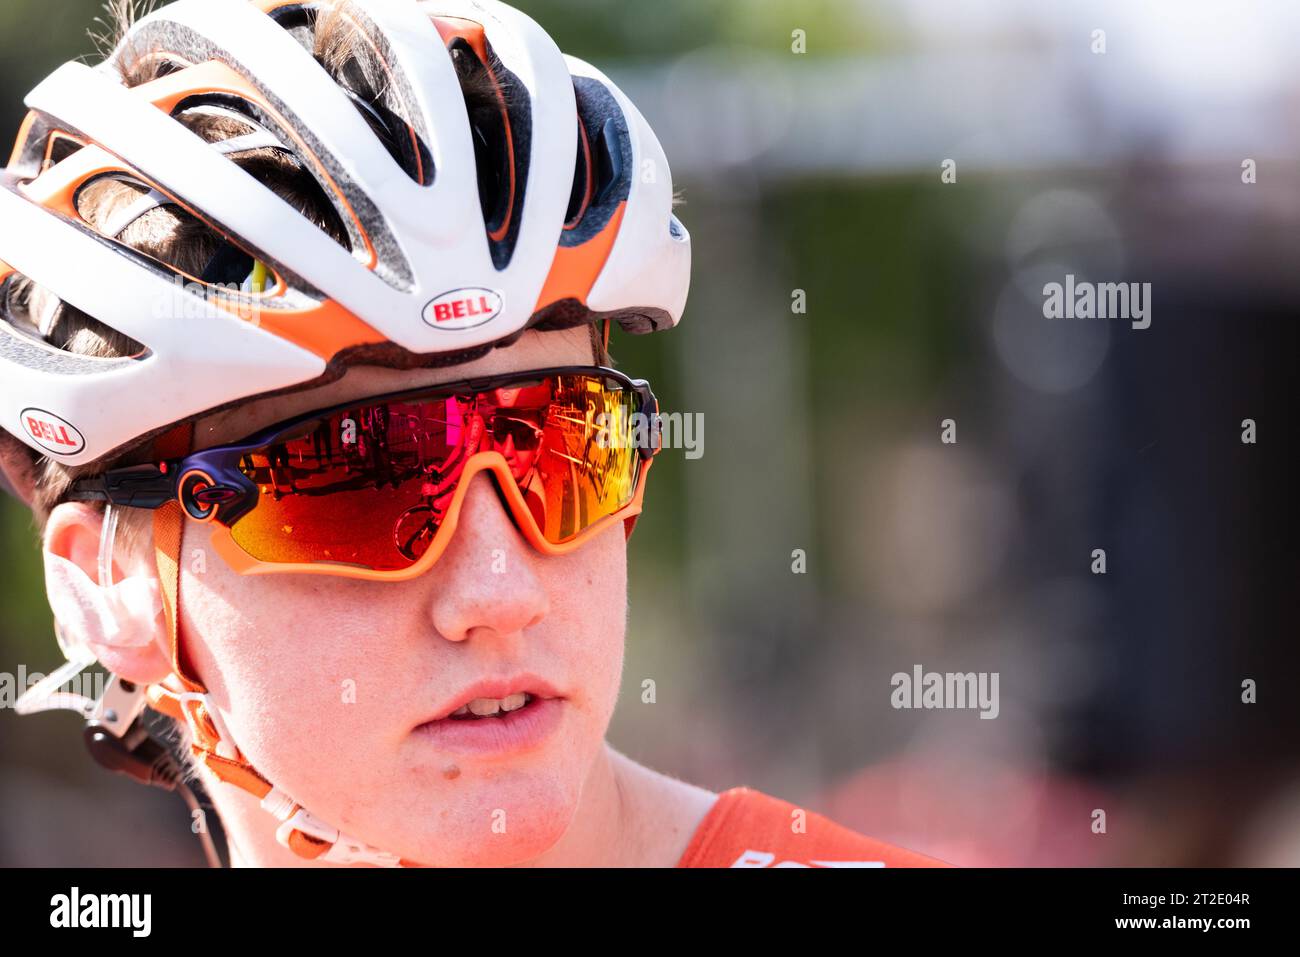 La ciclista Kelly Catlin di Rally Cycling alla gara di ciclismo femminile Prudential RideLondon Classique 2018, Londra, Regno Unito. I motociclisti si riflettono negli occhiali Foto Stock